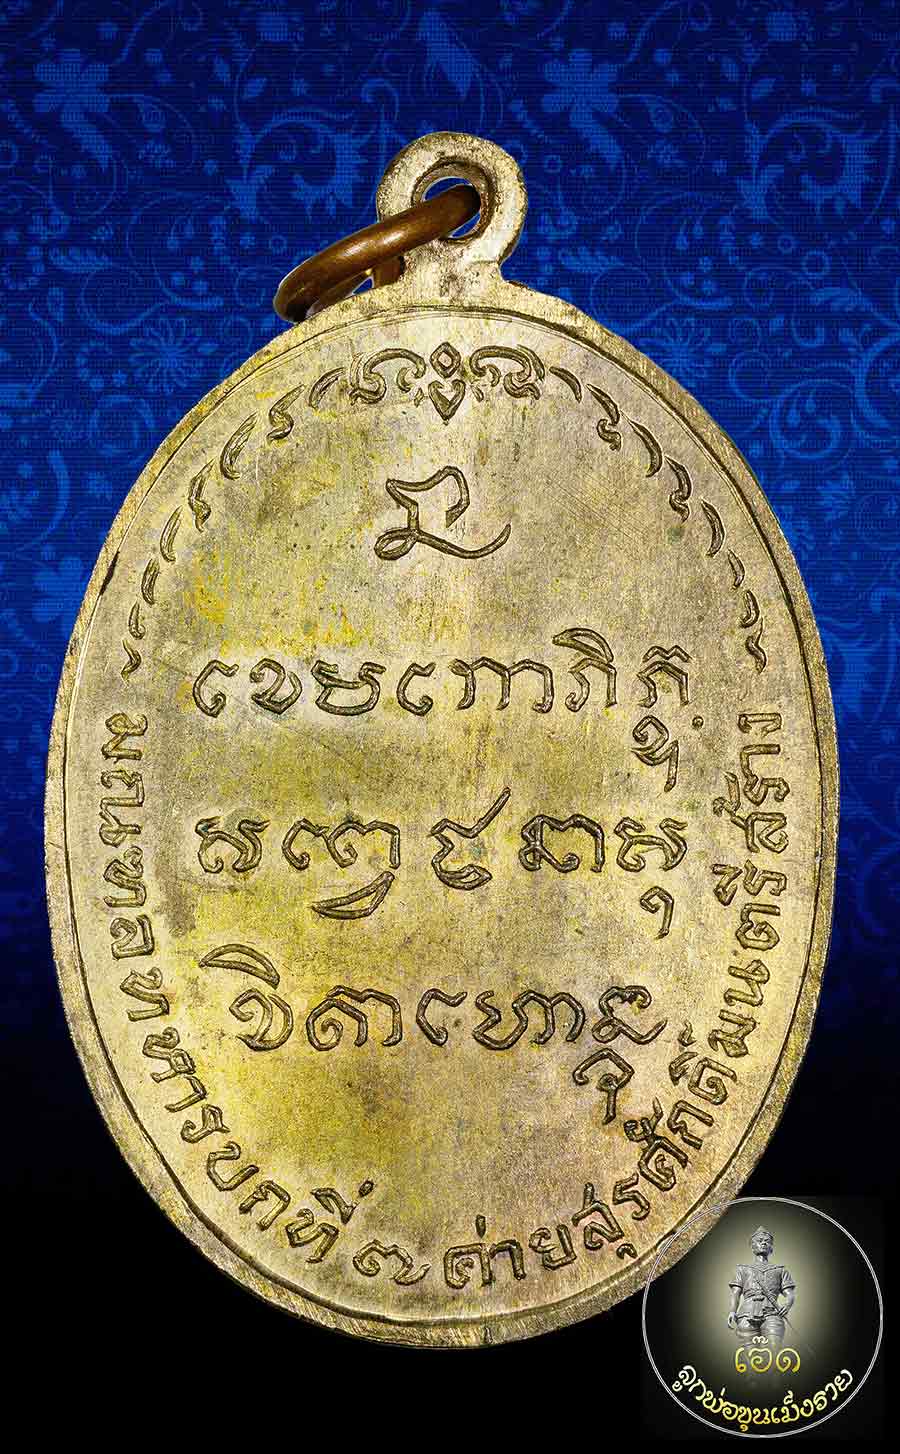 เหรียญหลวงพ่อเกษมเขมโก มทบ.๗ ค่ายสุรศักดิ์มนตรีปี๒๕๑๘เนื้อนวะโลหะ นวะพลายทอง บล็อกนิยมคับ 